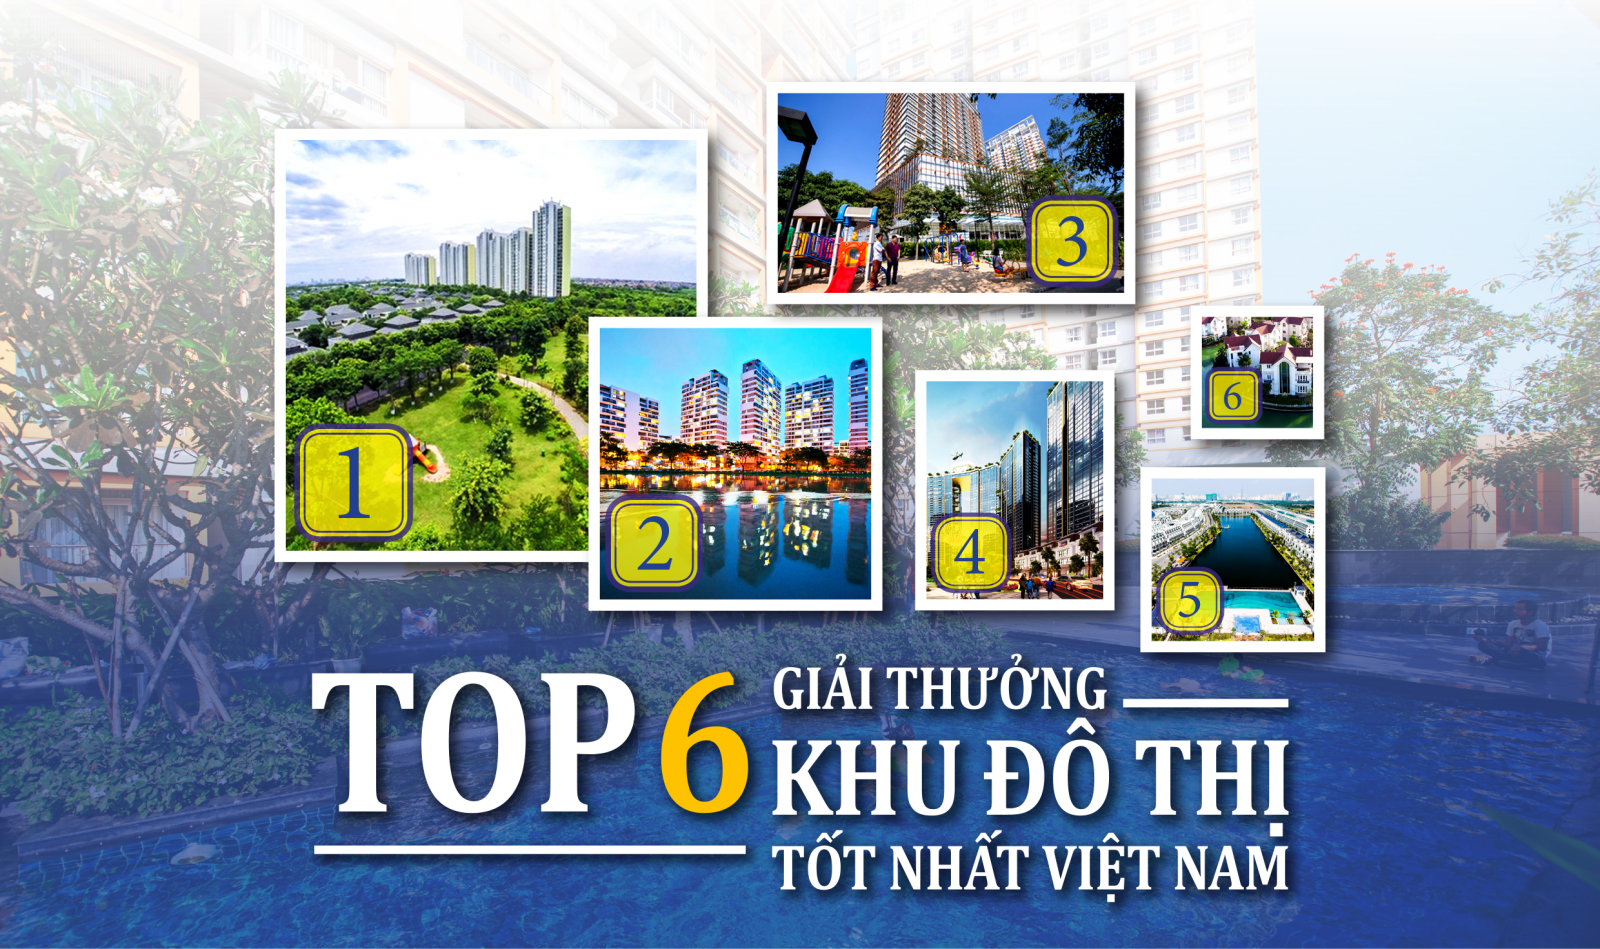 Top 6 khu đô thị tốt nhất Việt Nam